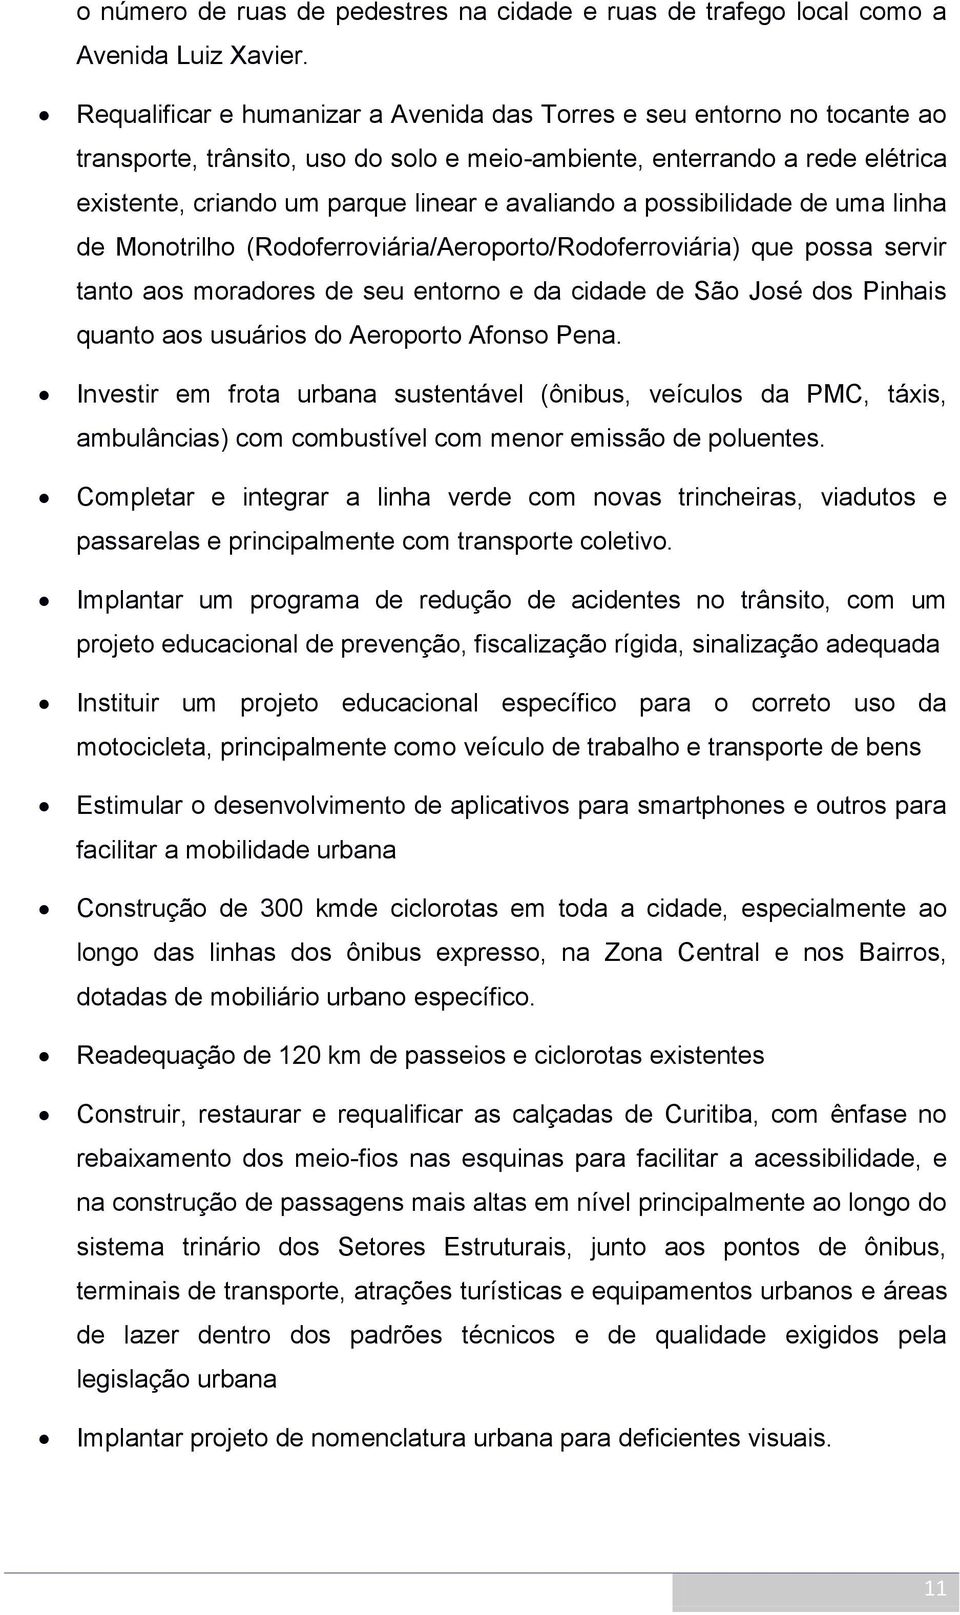 a possibilidade de uma linha de Monotrilho (Rodoferroviária/Aeroporto/Rodoferroviária) que possa servir tanto aos moradores de seu entorno e da cidade de São José dos Pinhais quanto aos usuários do